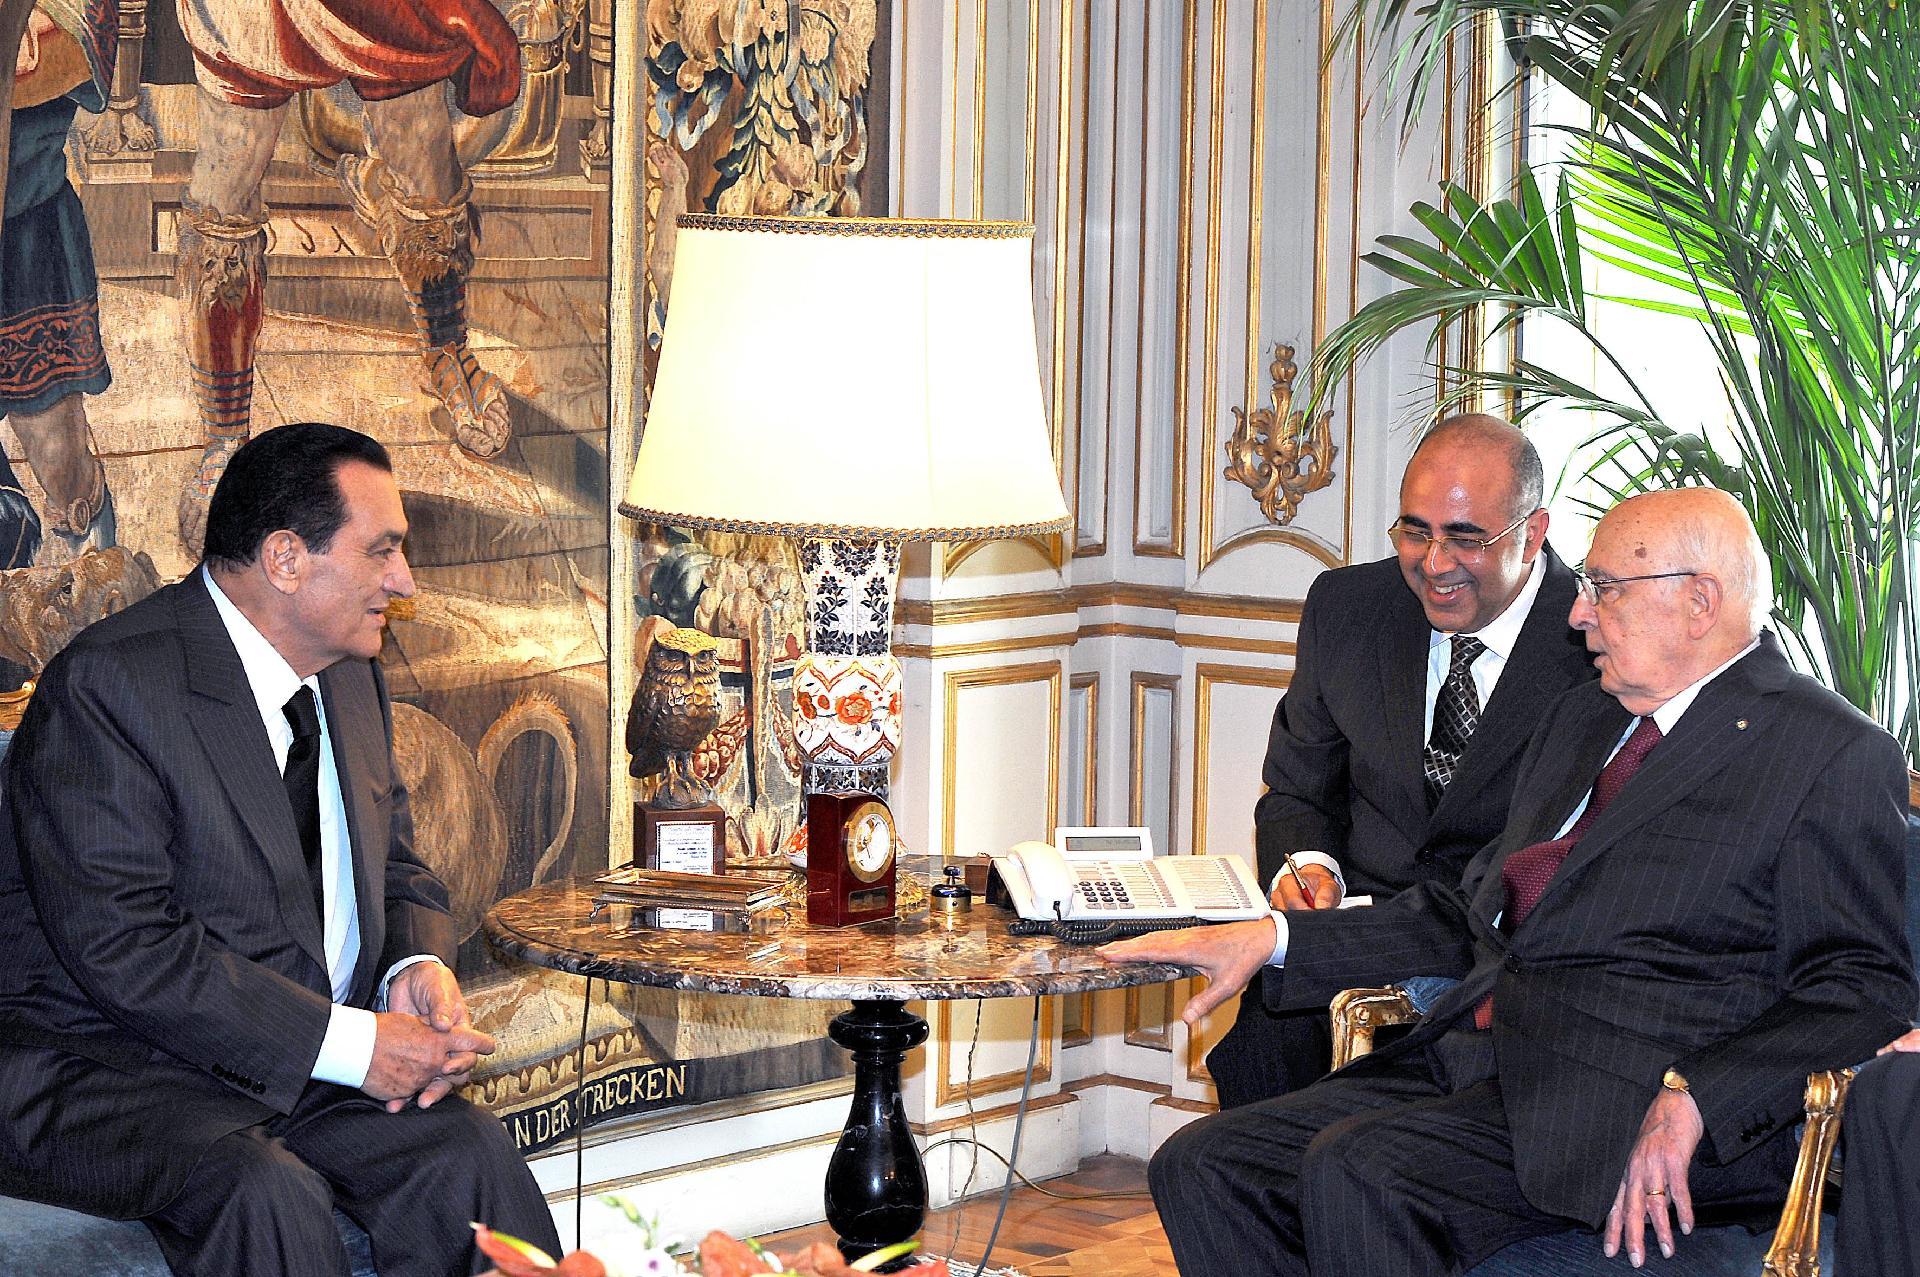 Il Presidente Giorgio Napolitano con il Sig. Hosni Mubarak, Presidente della Repubblica Araba d'Egitto, durante i colloqui